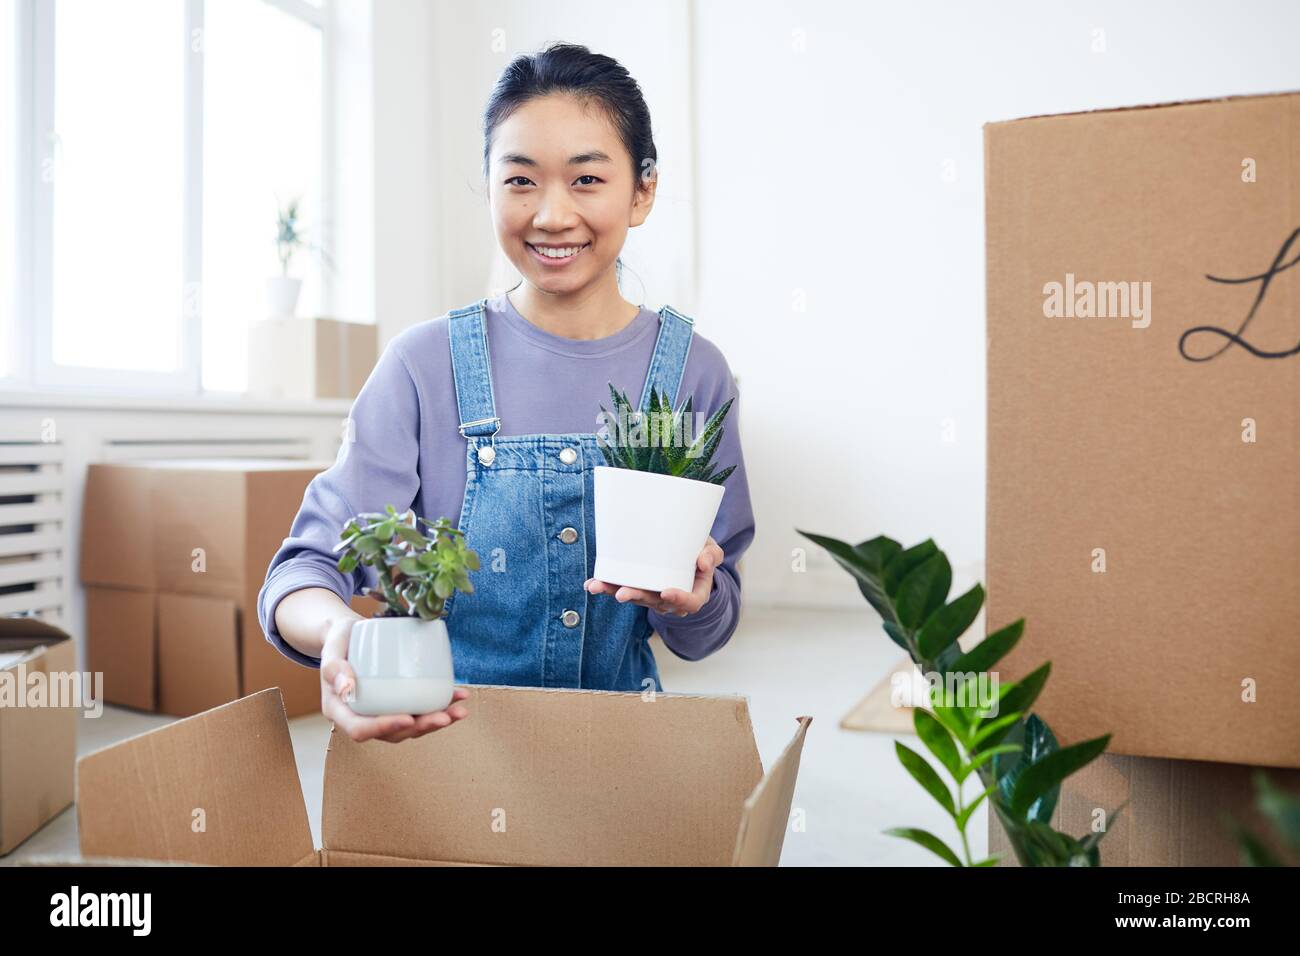 Retrato de una joven mujer asiática empaquetando plantas en cajas de cartón y sonriendo con la cámara mientras se mueve a una nueva casa o apartamento, copiar espacio Foto de stock